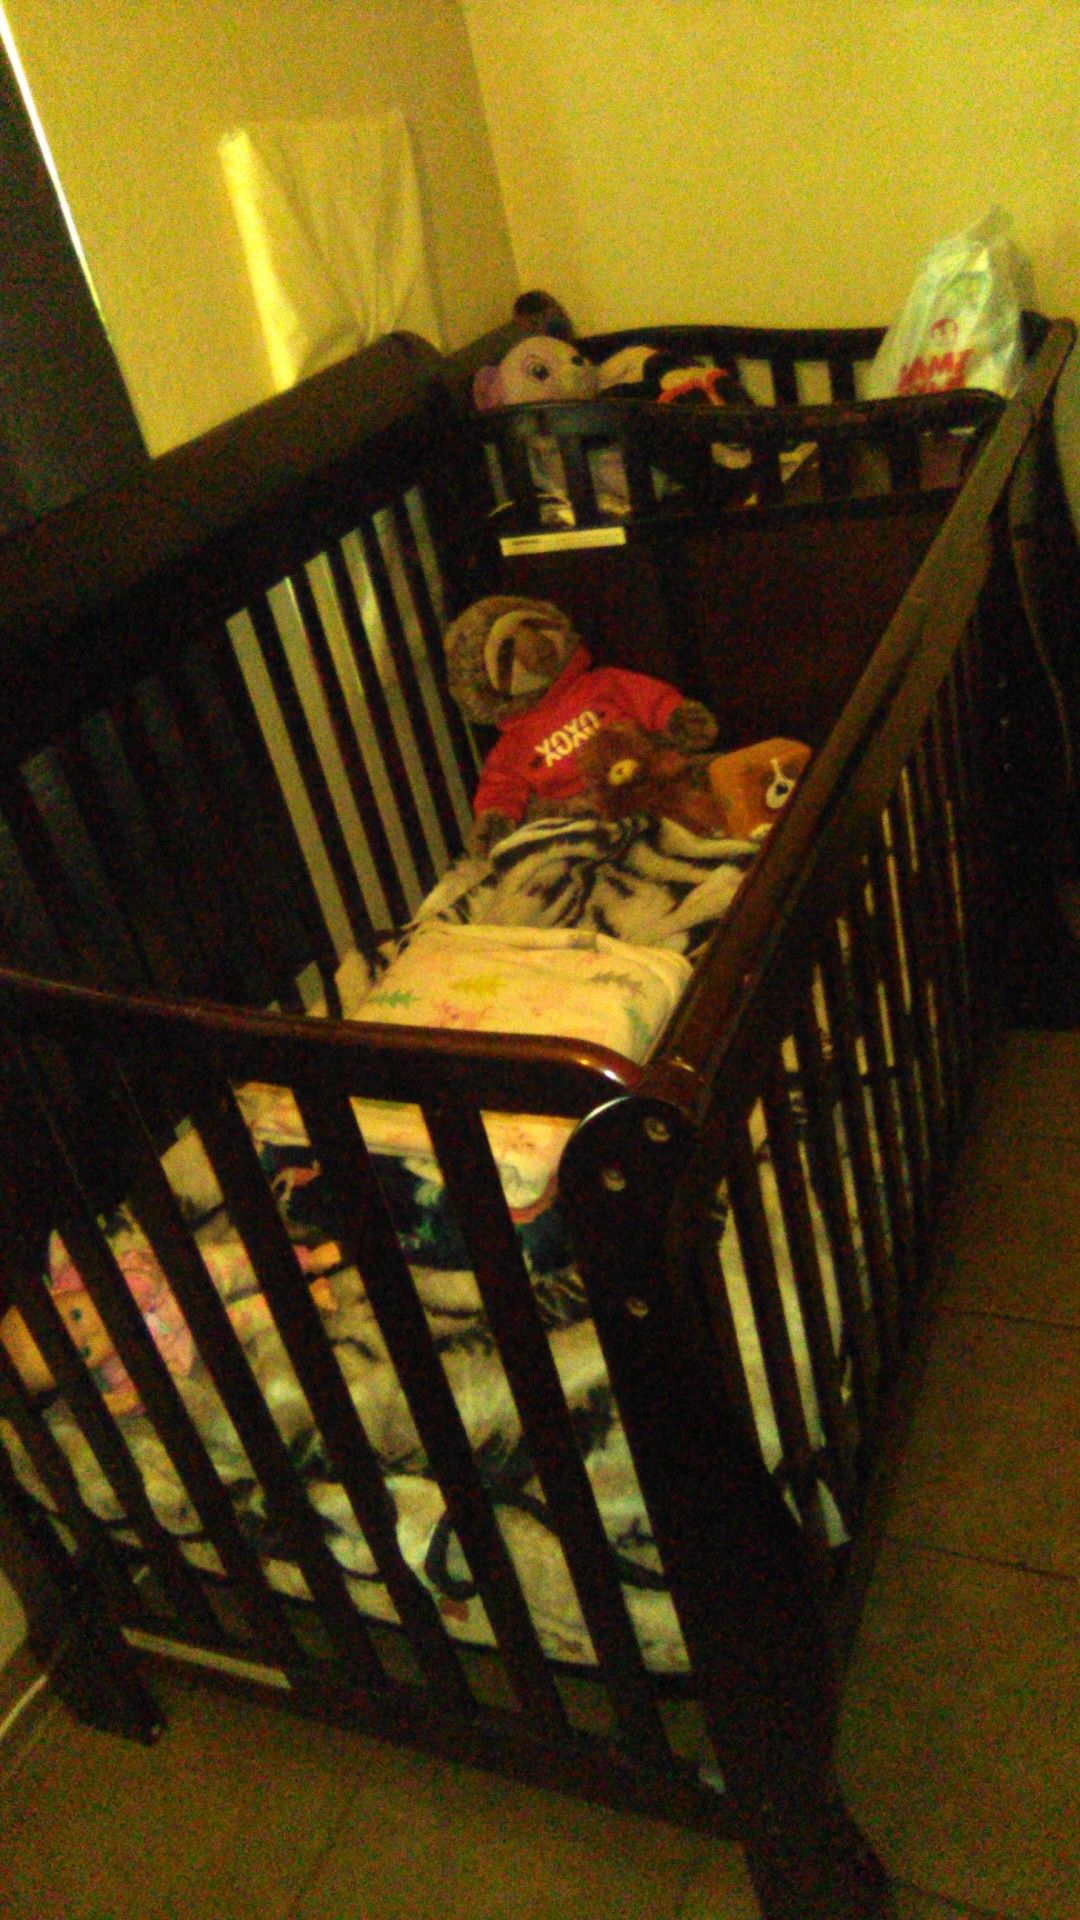 Baby crib must go IMMEDIATELY!!!!!